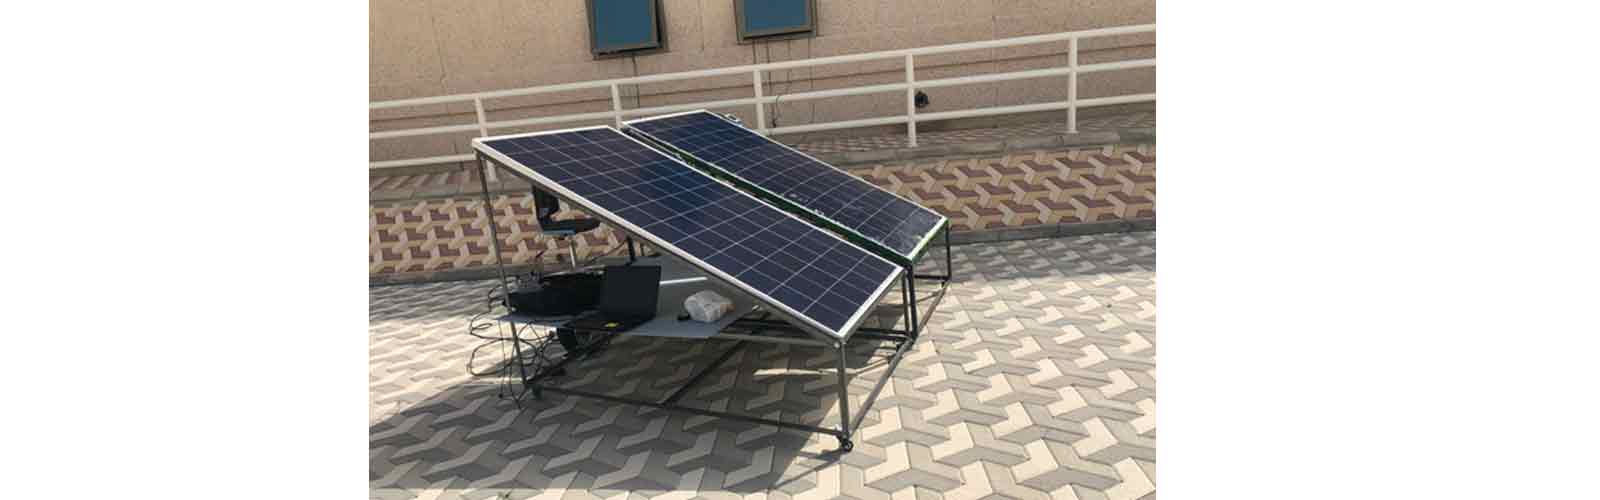 خنک سازی پنل خورشیدی